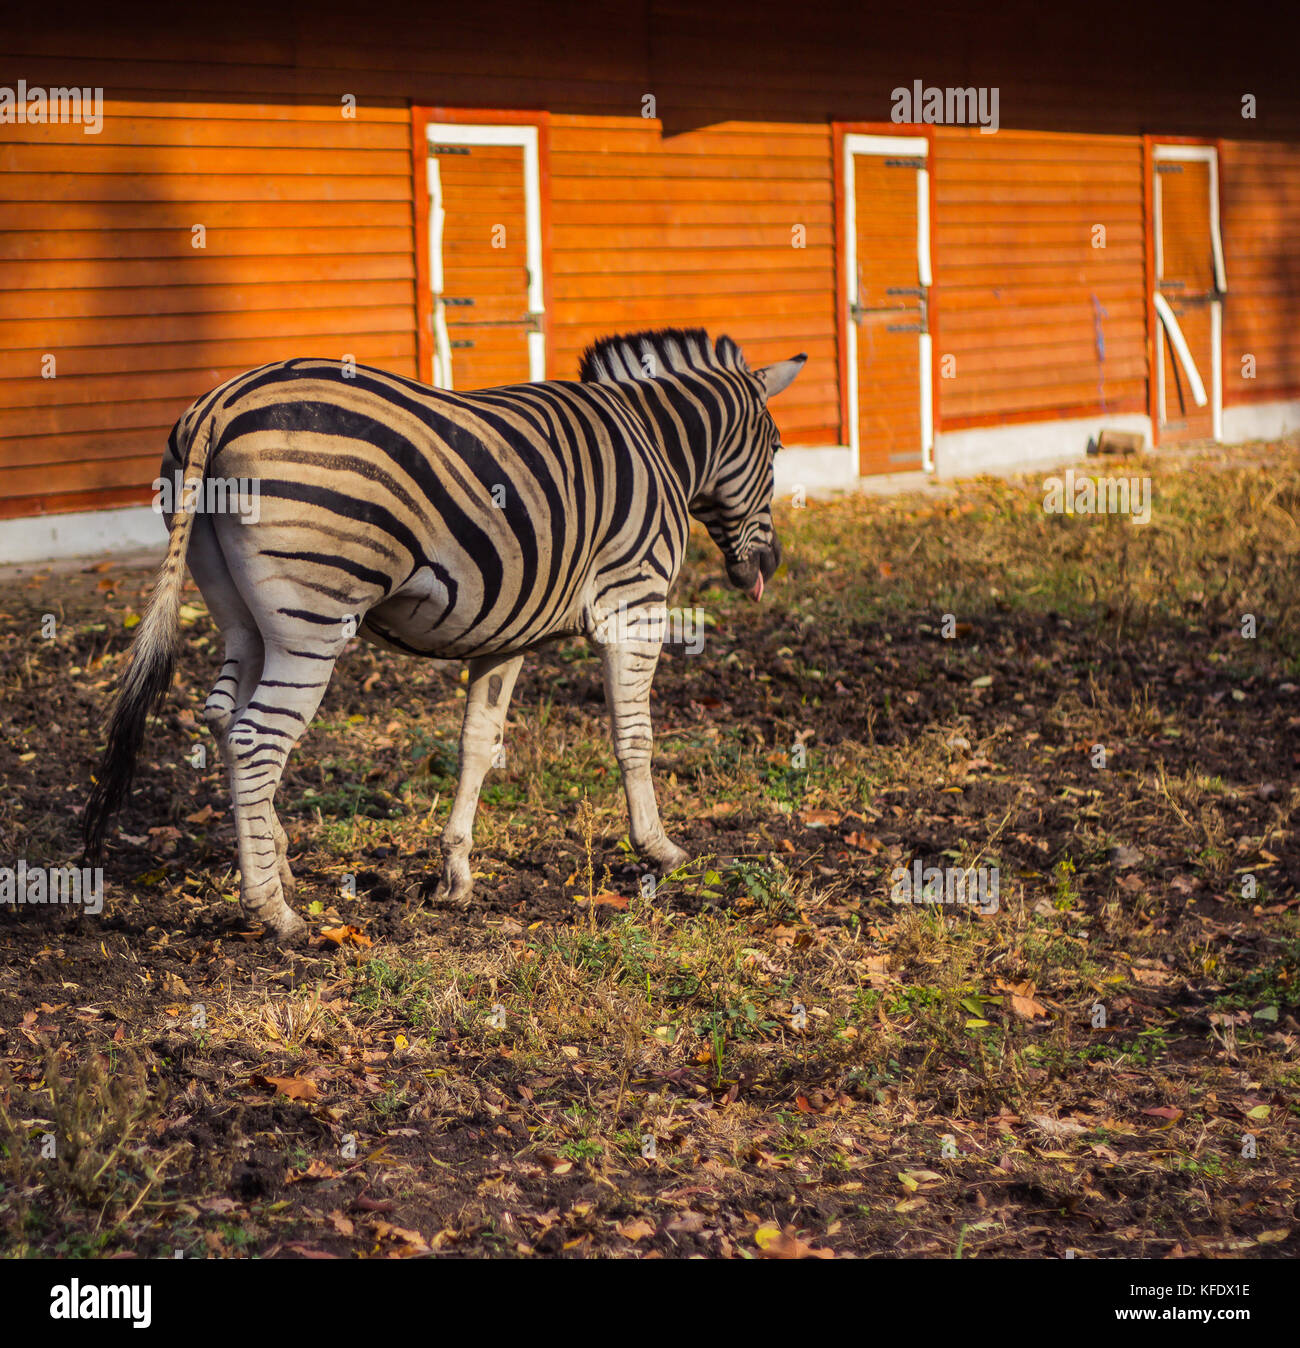 Zebra in piena crescita contro lo sfondo del riquadro arancione della penna Foto Stock